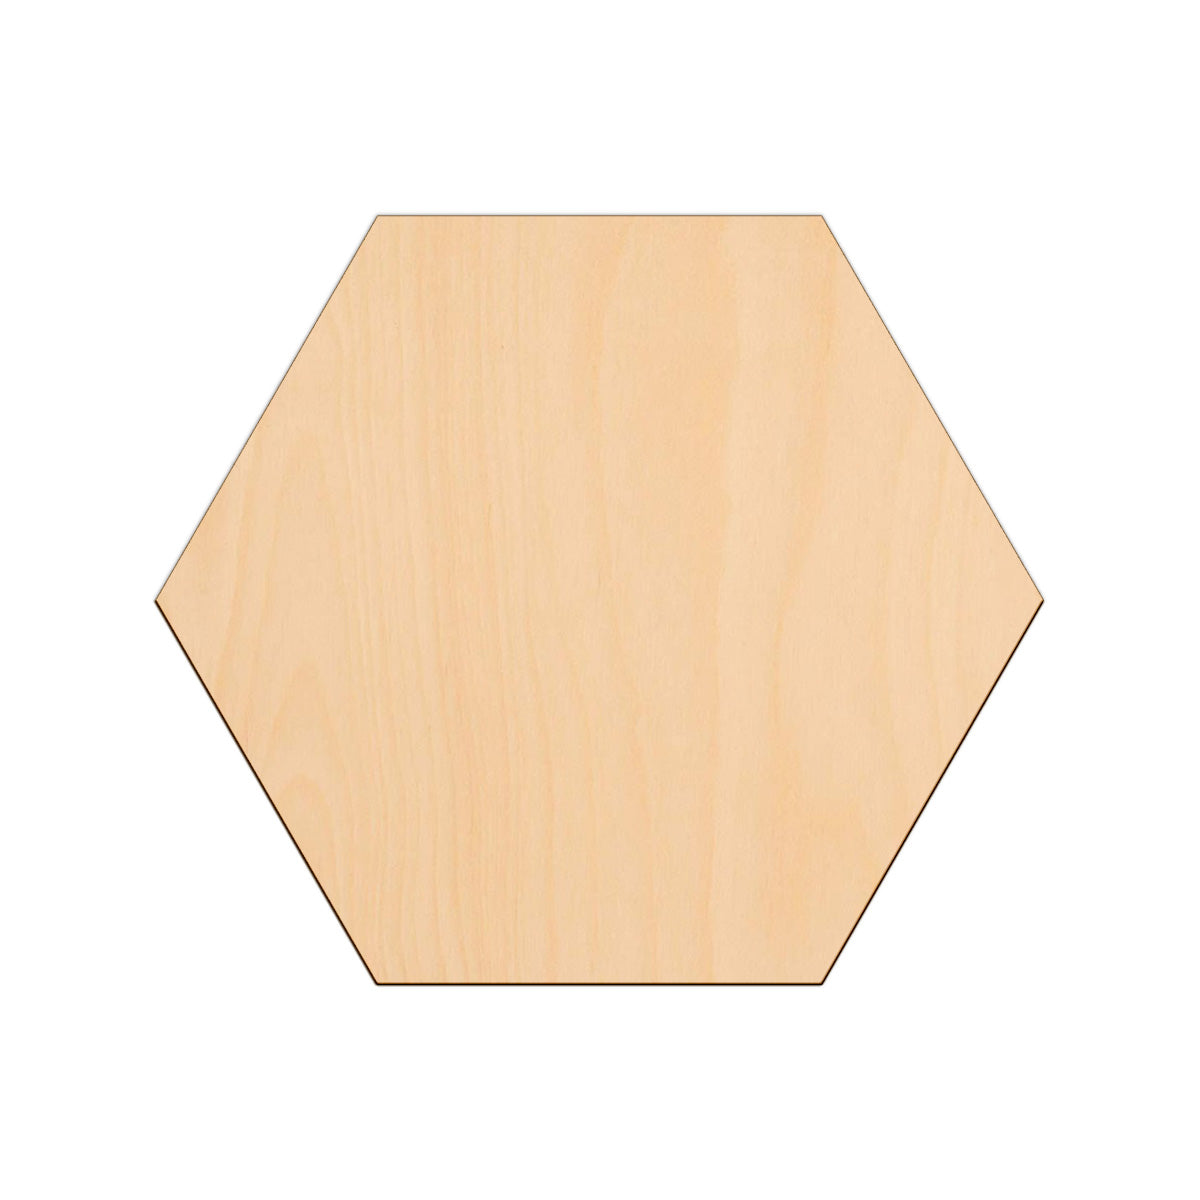 Bulk Set of Hexagons | Lot of Hexagons | Wooden Craft Hexagons | Blank  Hexagons | Wood Blanks | Craft Blanks | Kids Art | School Projects | DIY